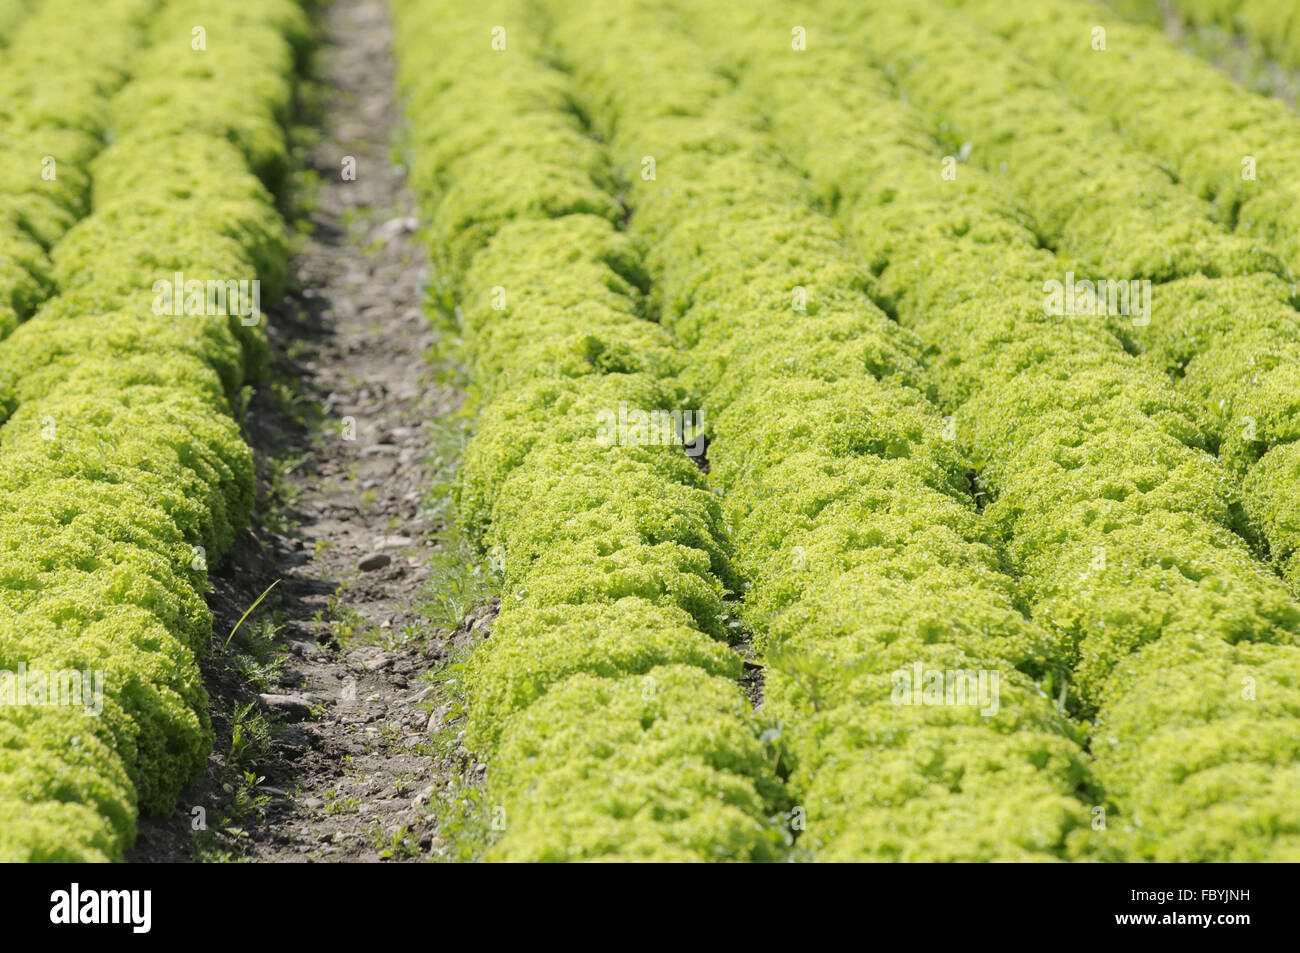 fields of lettuce Stock Photo